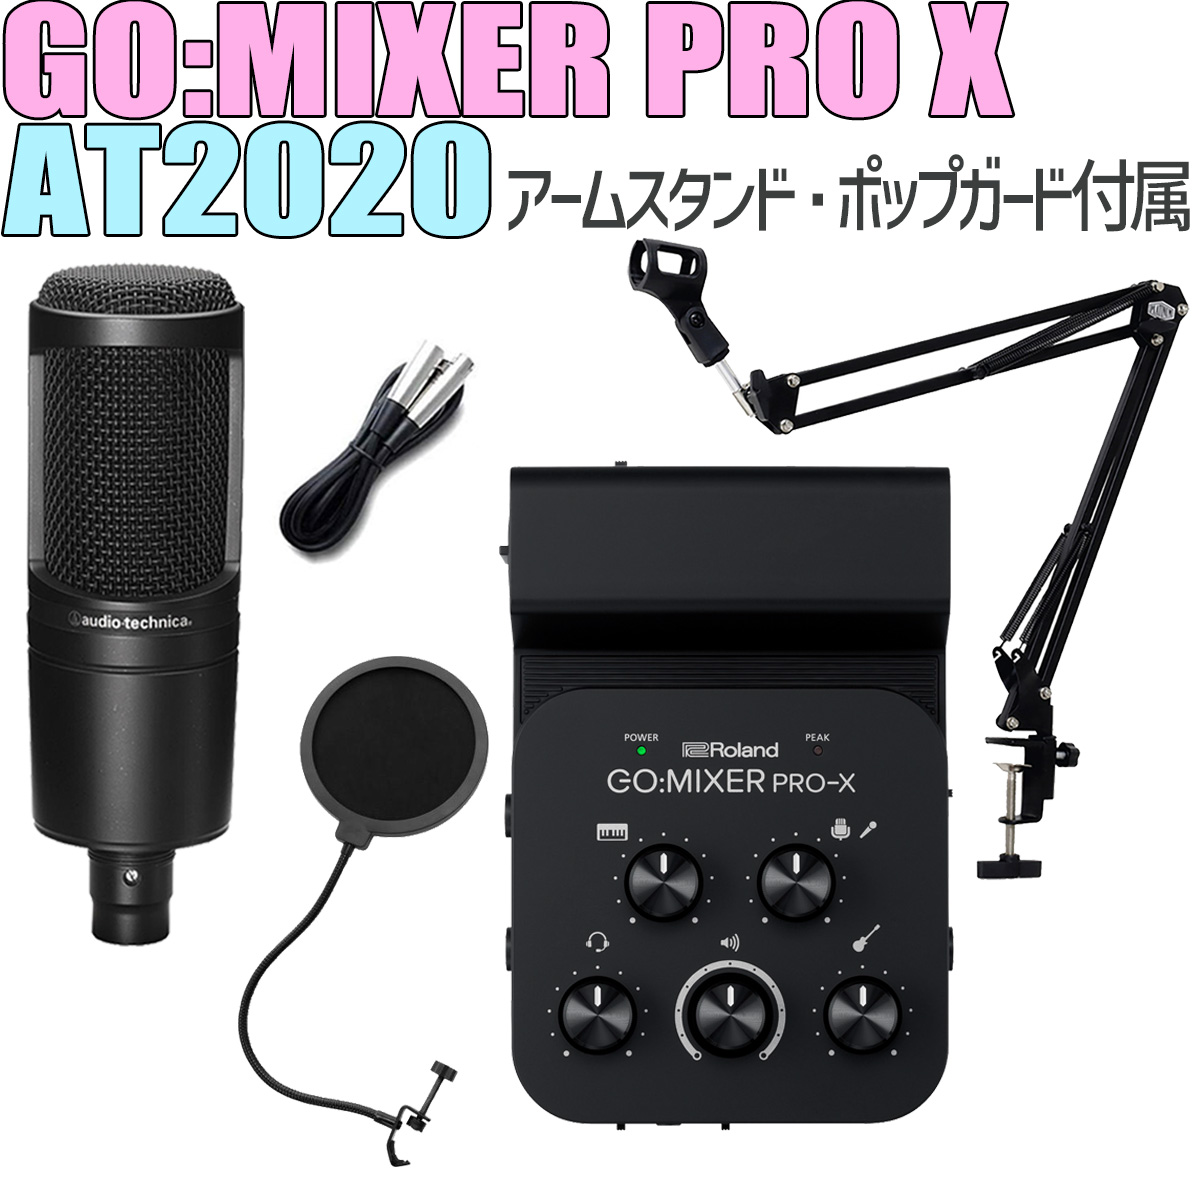 Roland GO:MIXER PRO-X + audio-technica AT2020 高音質配信セット アームスタンド ポップガード付属 スマホ用インターフェース 【ローランド】